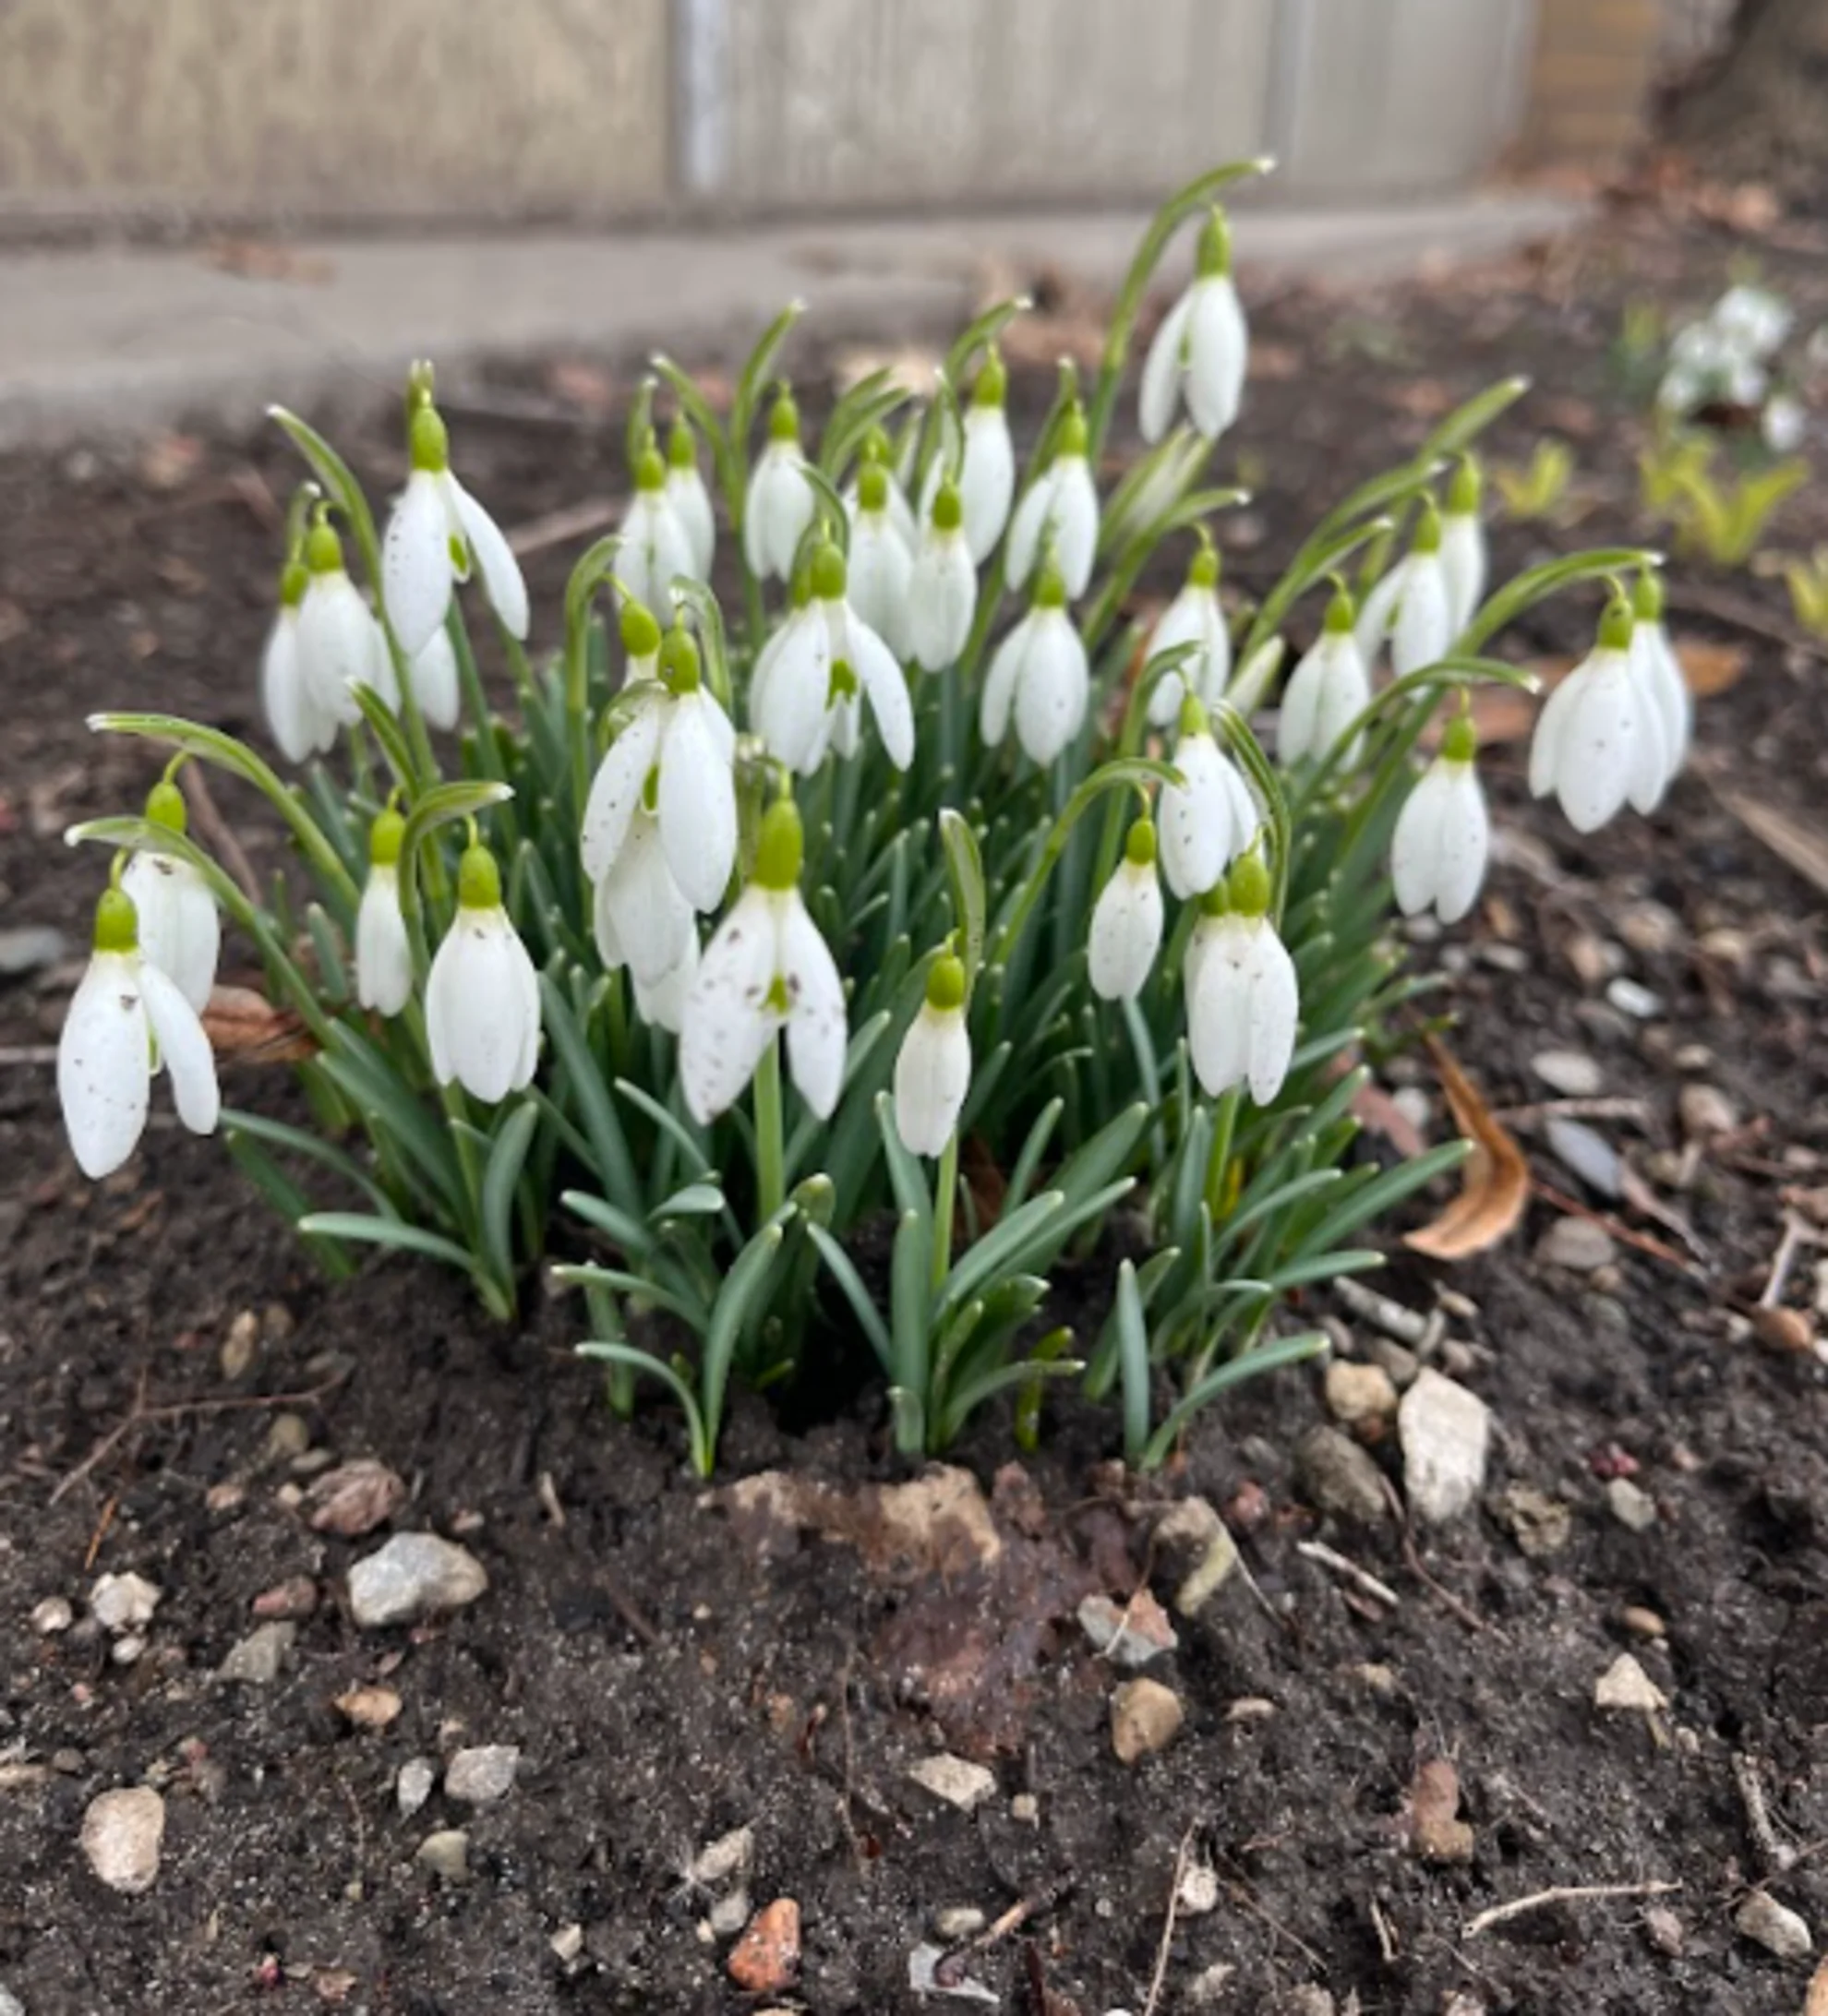 Rachel Modestino - early spring flowers in Oakville - Feb28